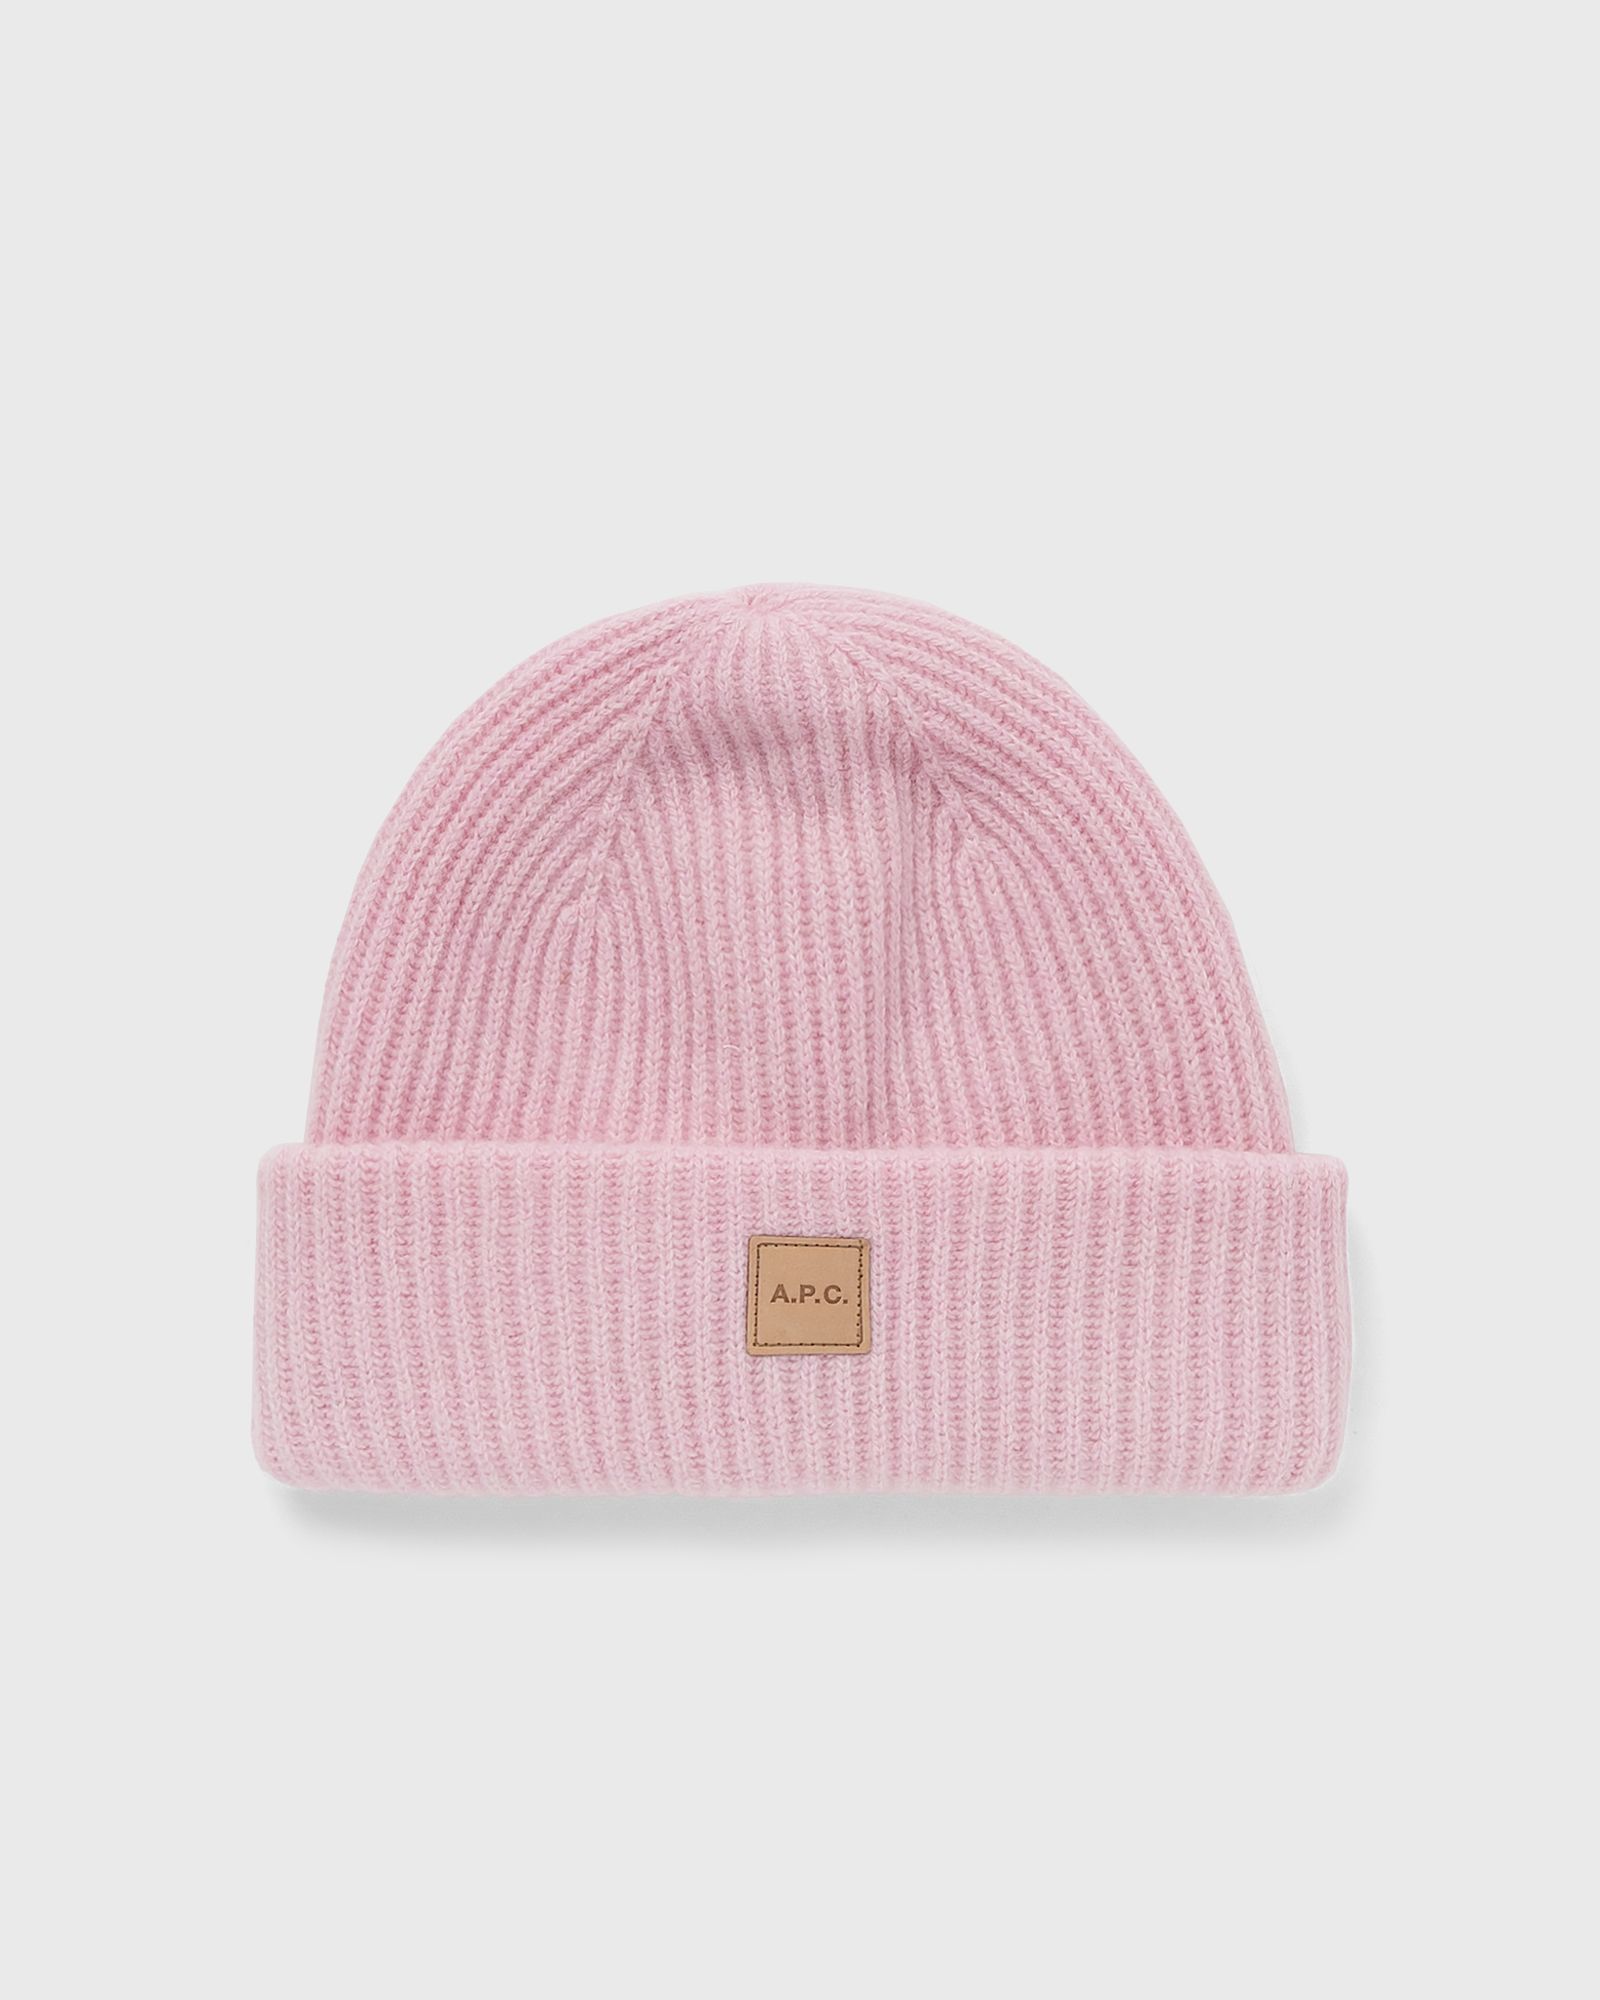 A.P.C. - bonnet michelle men beanies pink in größe:t2 - 29 cm